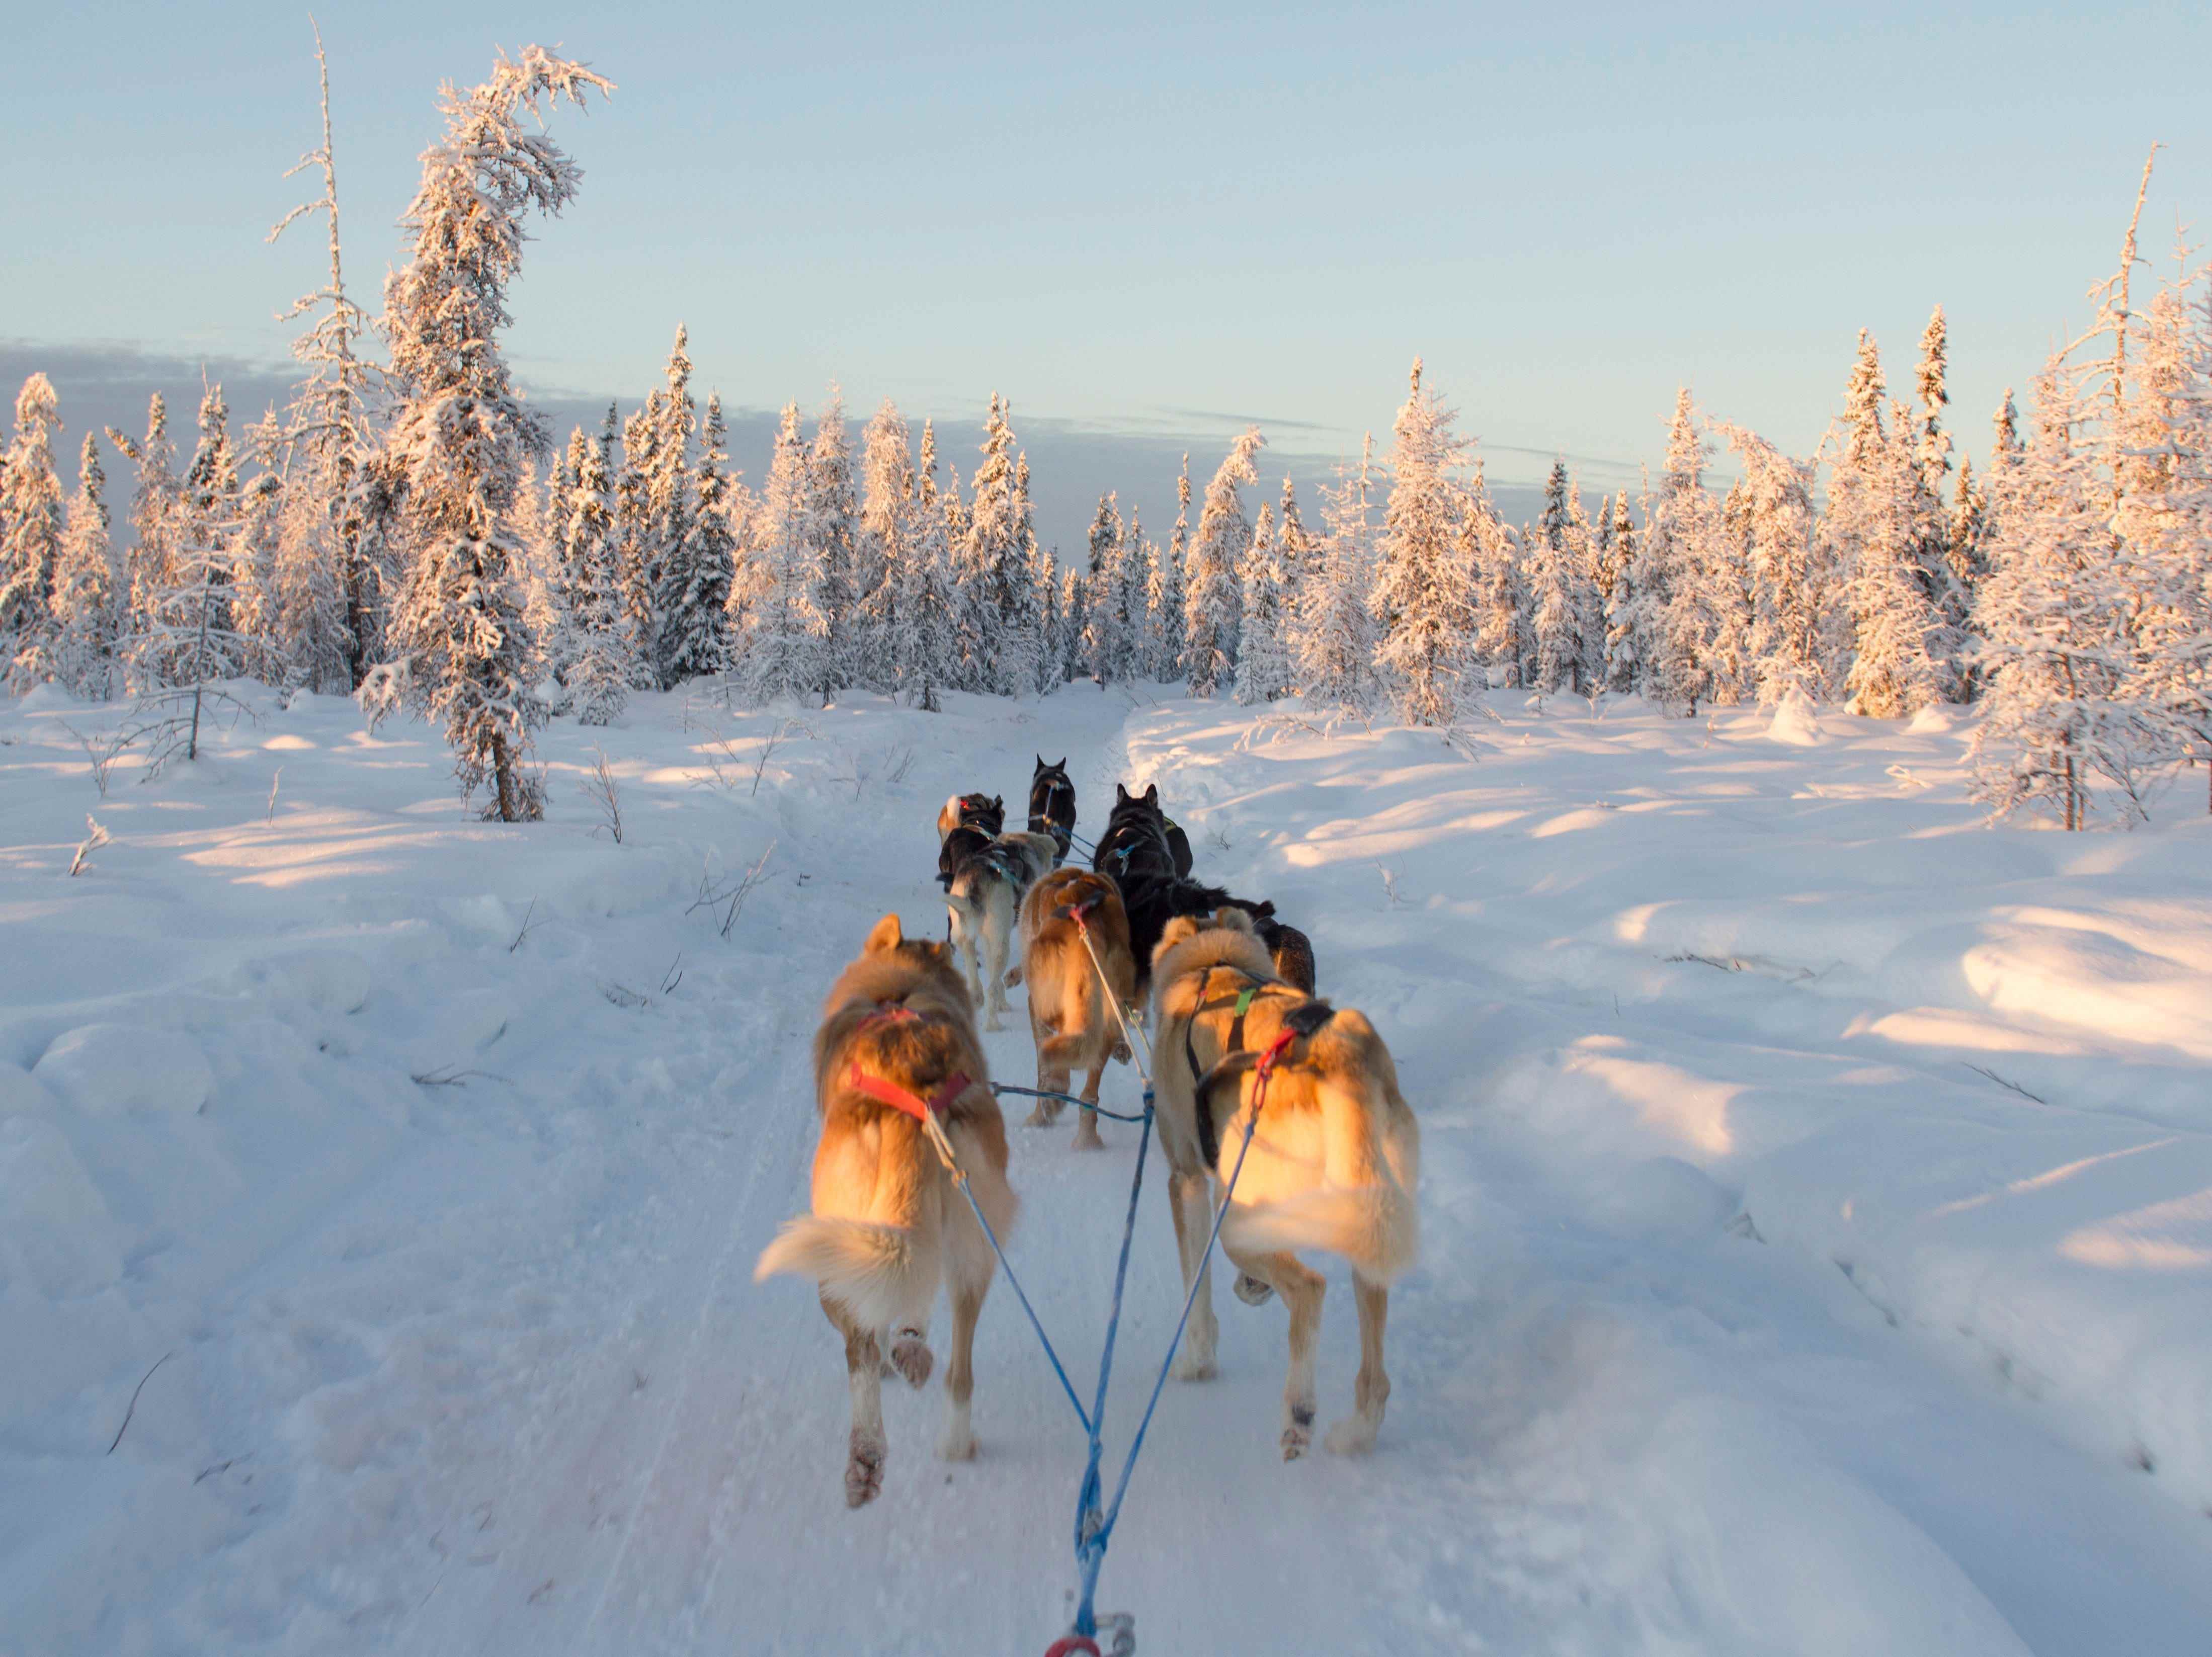 Mehrere Hunde ziehen einen Schlitten durch den Schnee in ein schneebedecktes Baumgebiet